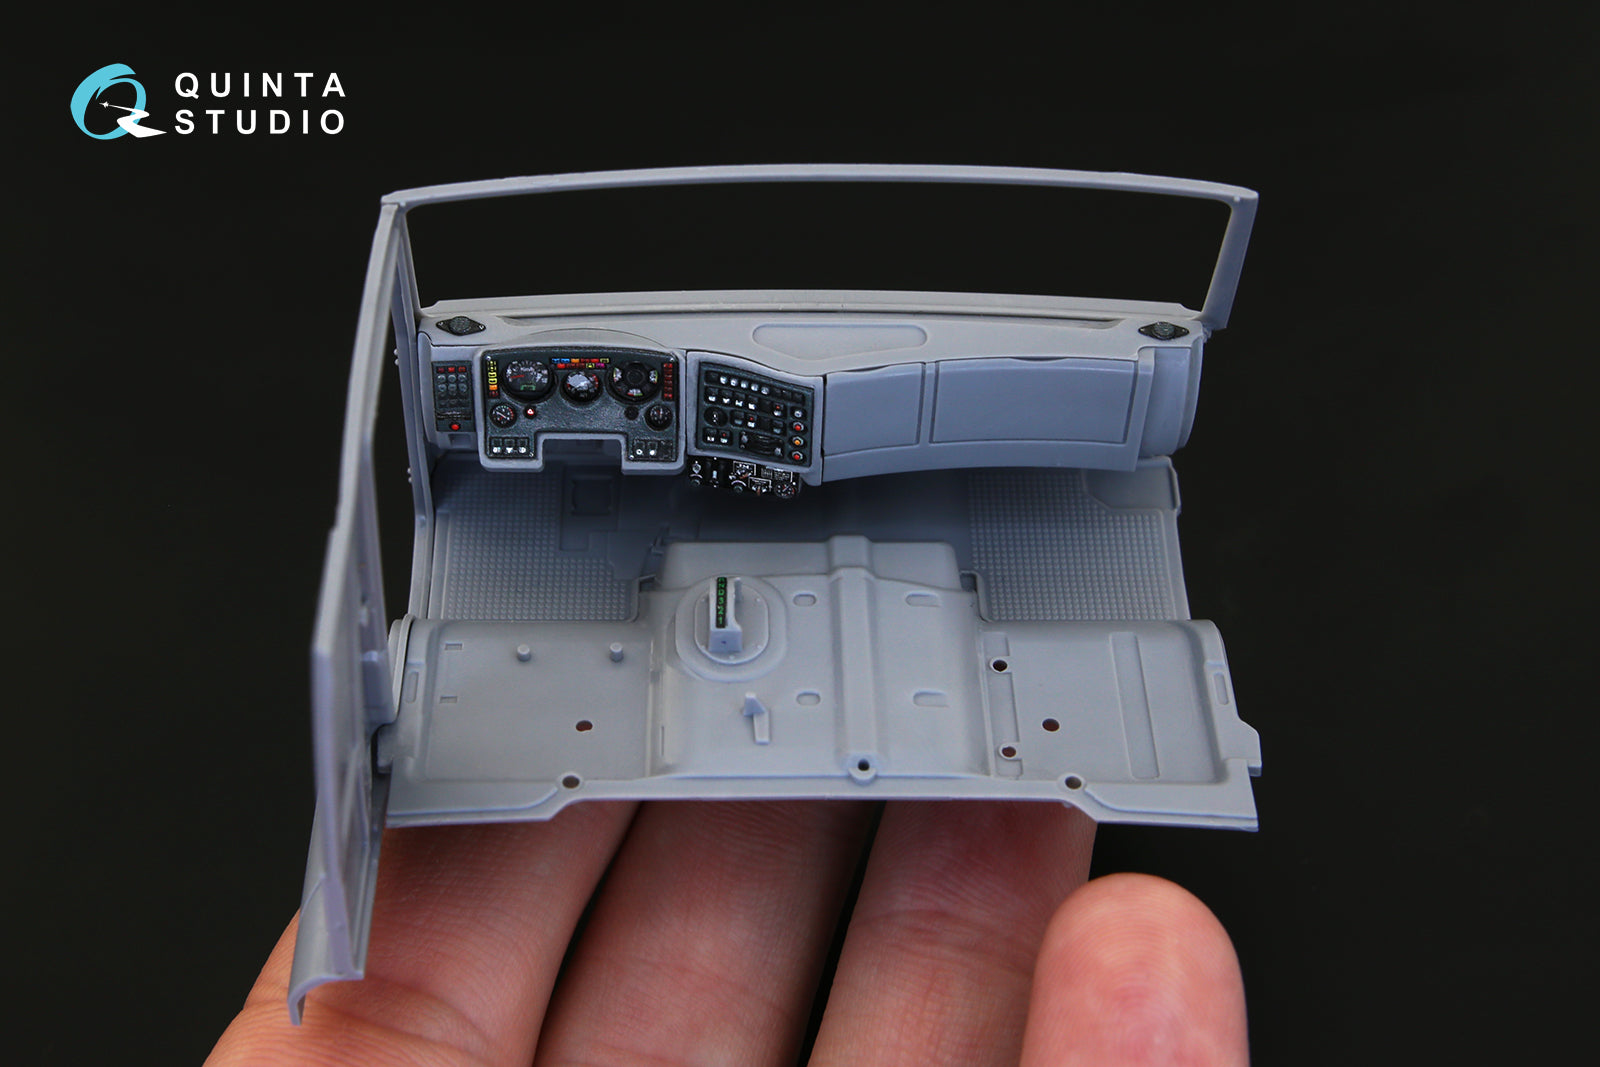 Quinta Studio - 1/35 Pantsir-S1 (SA-22 Greyhound) QD35014 for Zvezda kit